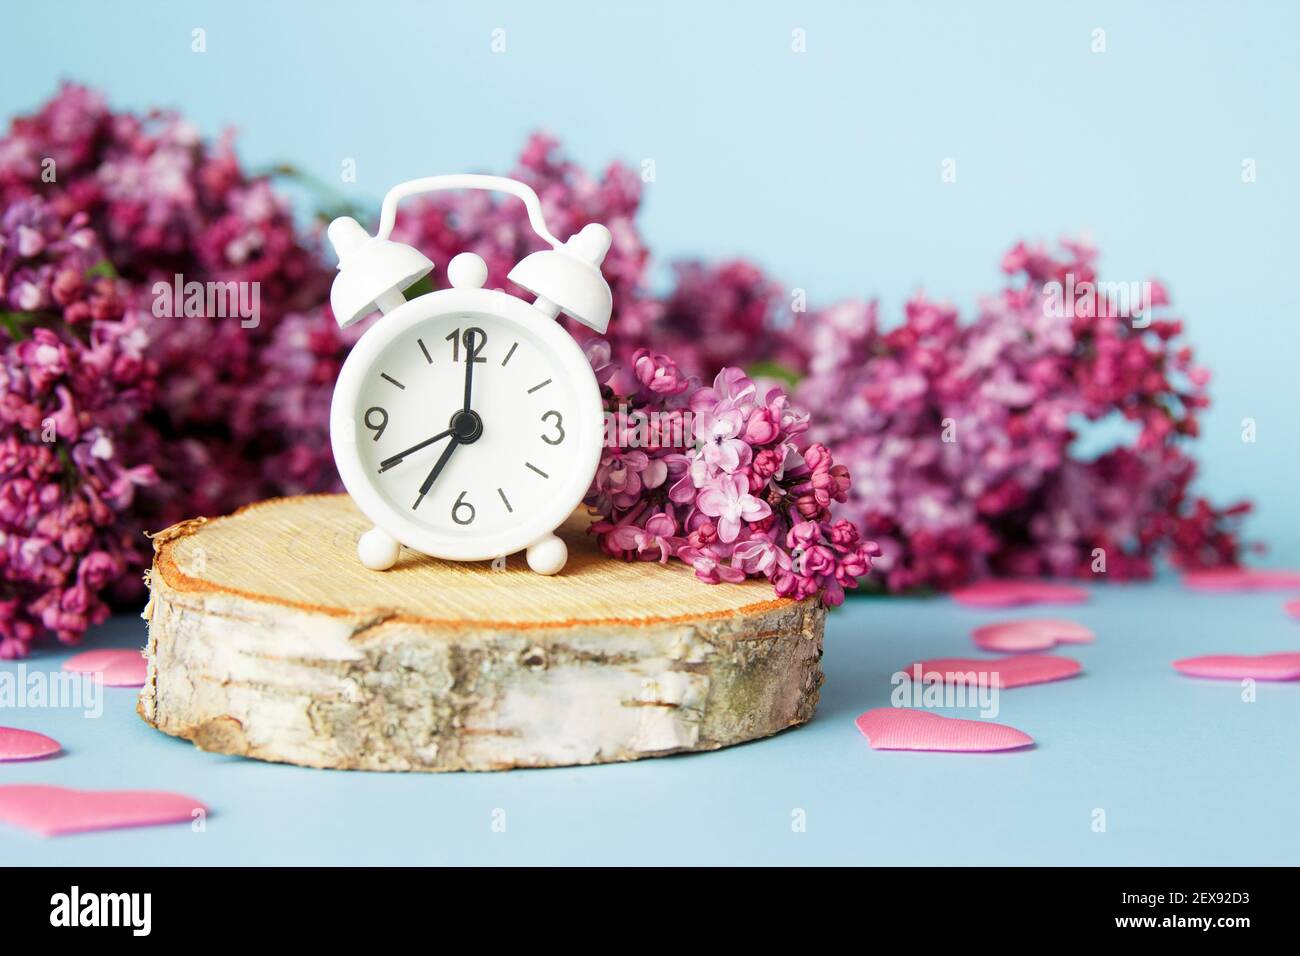 Flieder Blumen mit vintage winzig Wecker auf blauem Hintergrund. Frühlingshafte Morgenkonzeption. Stockfoto